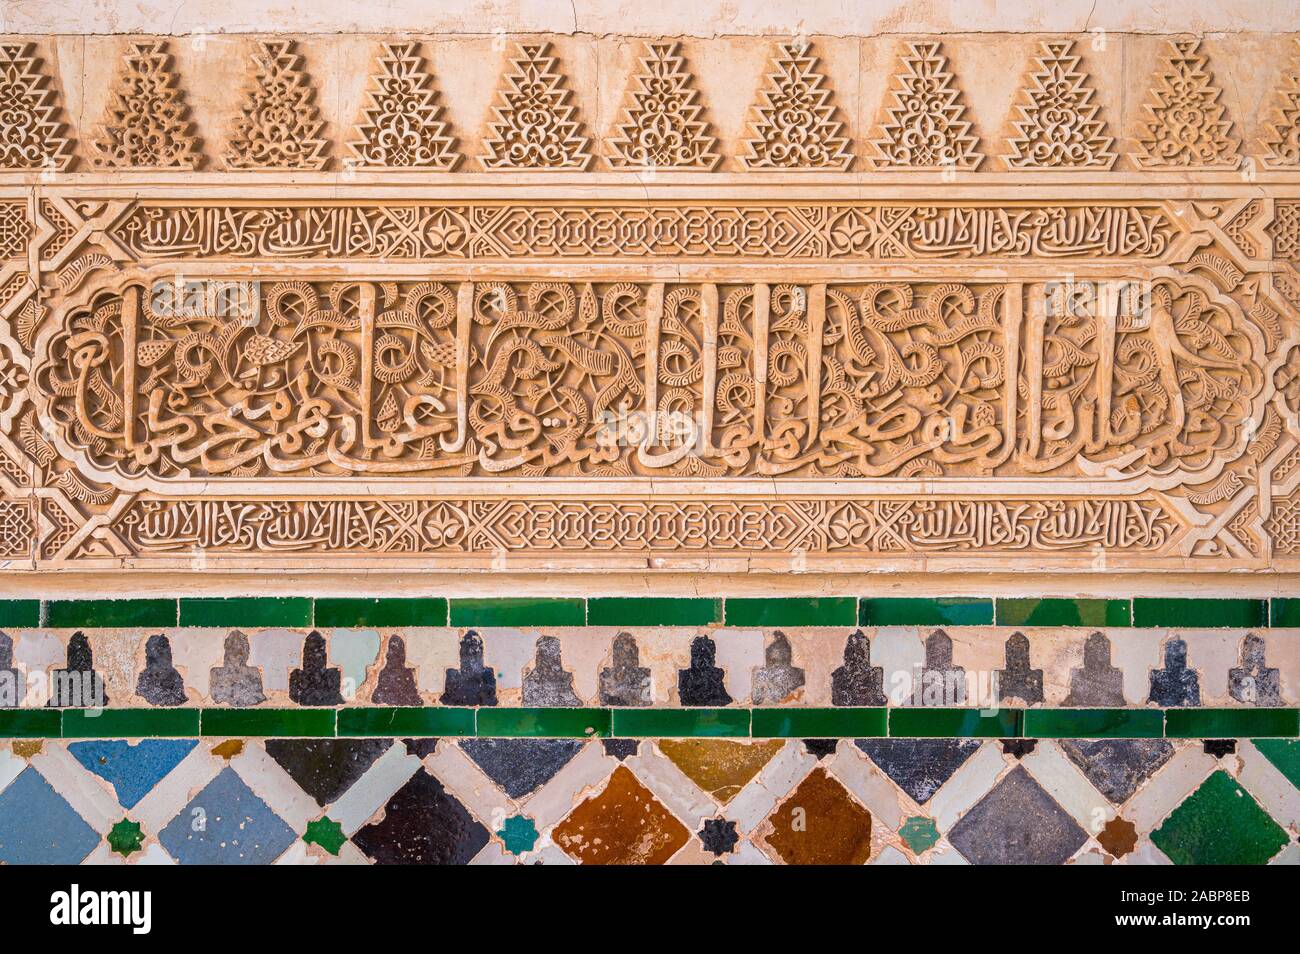 Décorées avec des murs dans le Palais de l'Alhambra à Grenade avec inscriptions arabes. L'Andalousie, espagne. Juin-03-2019 Banque D'Images